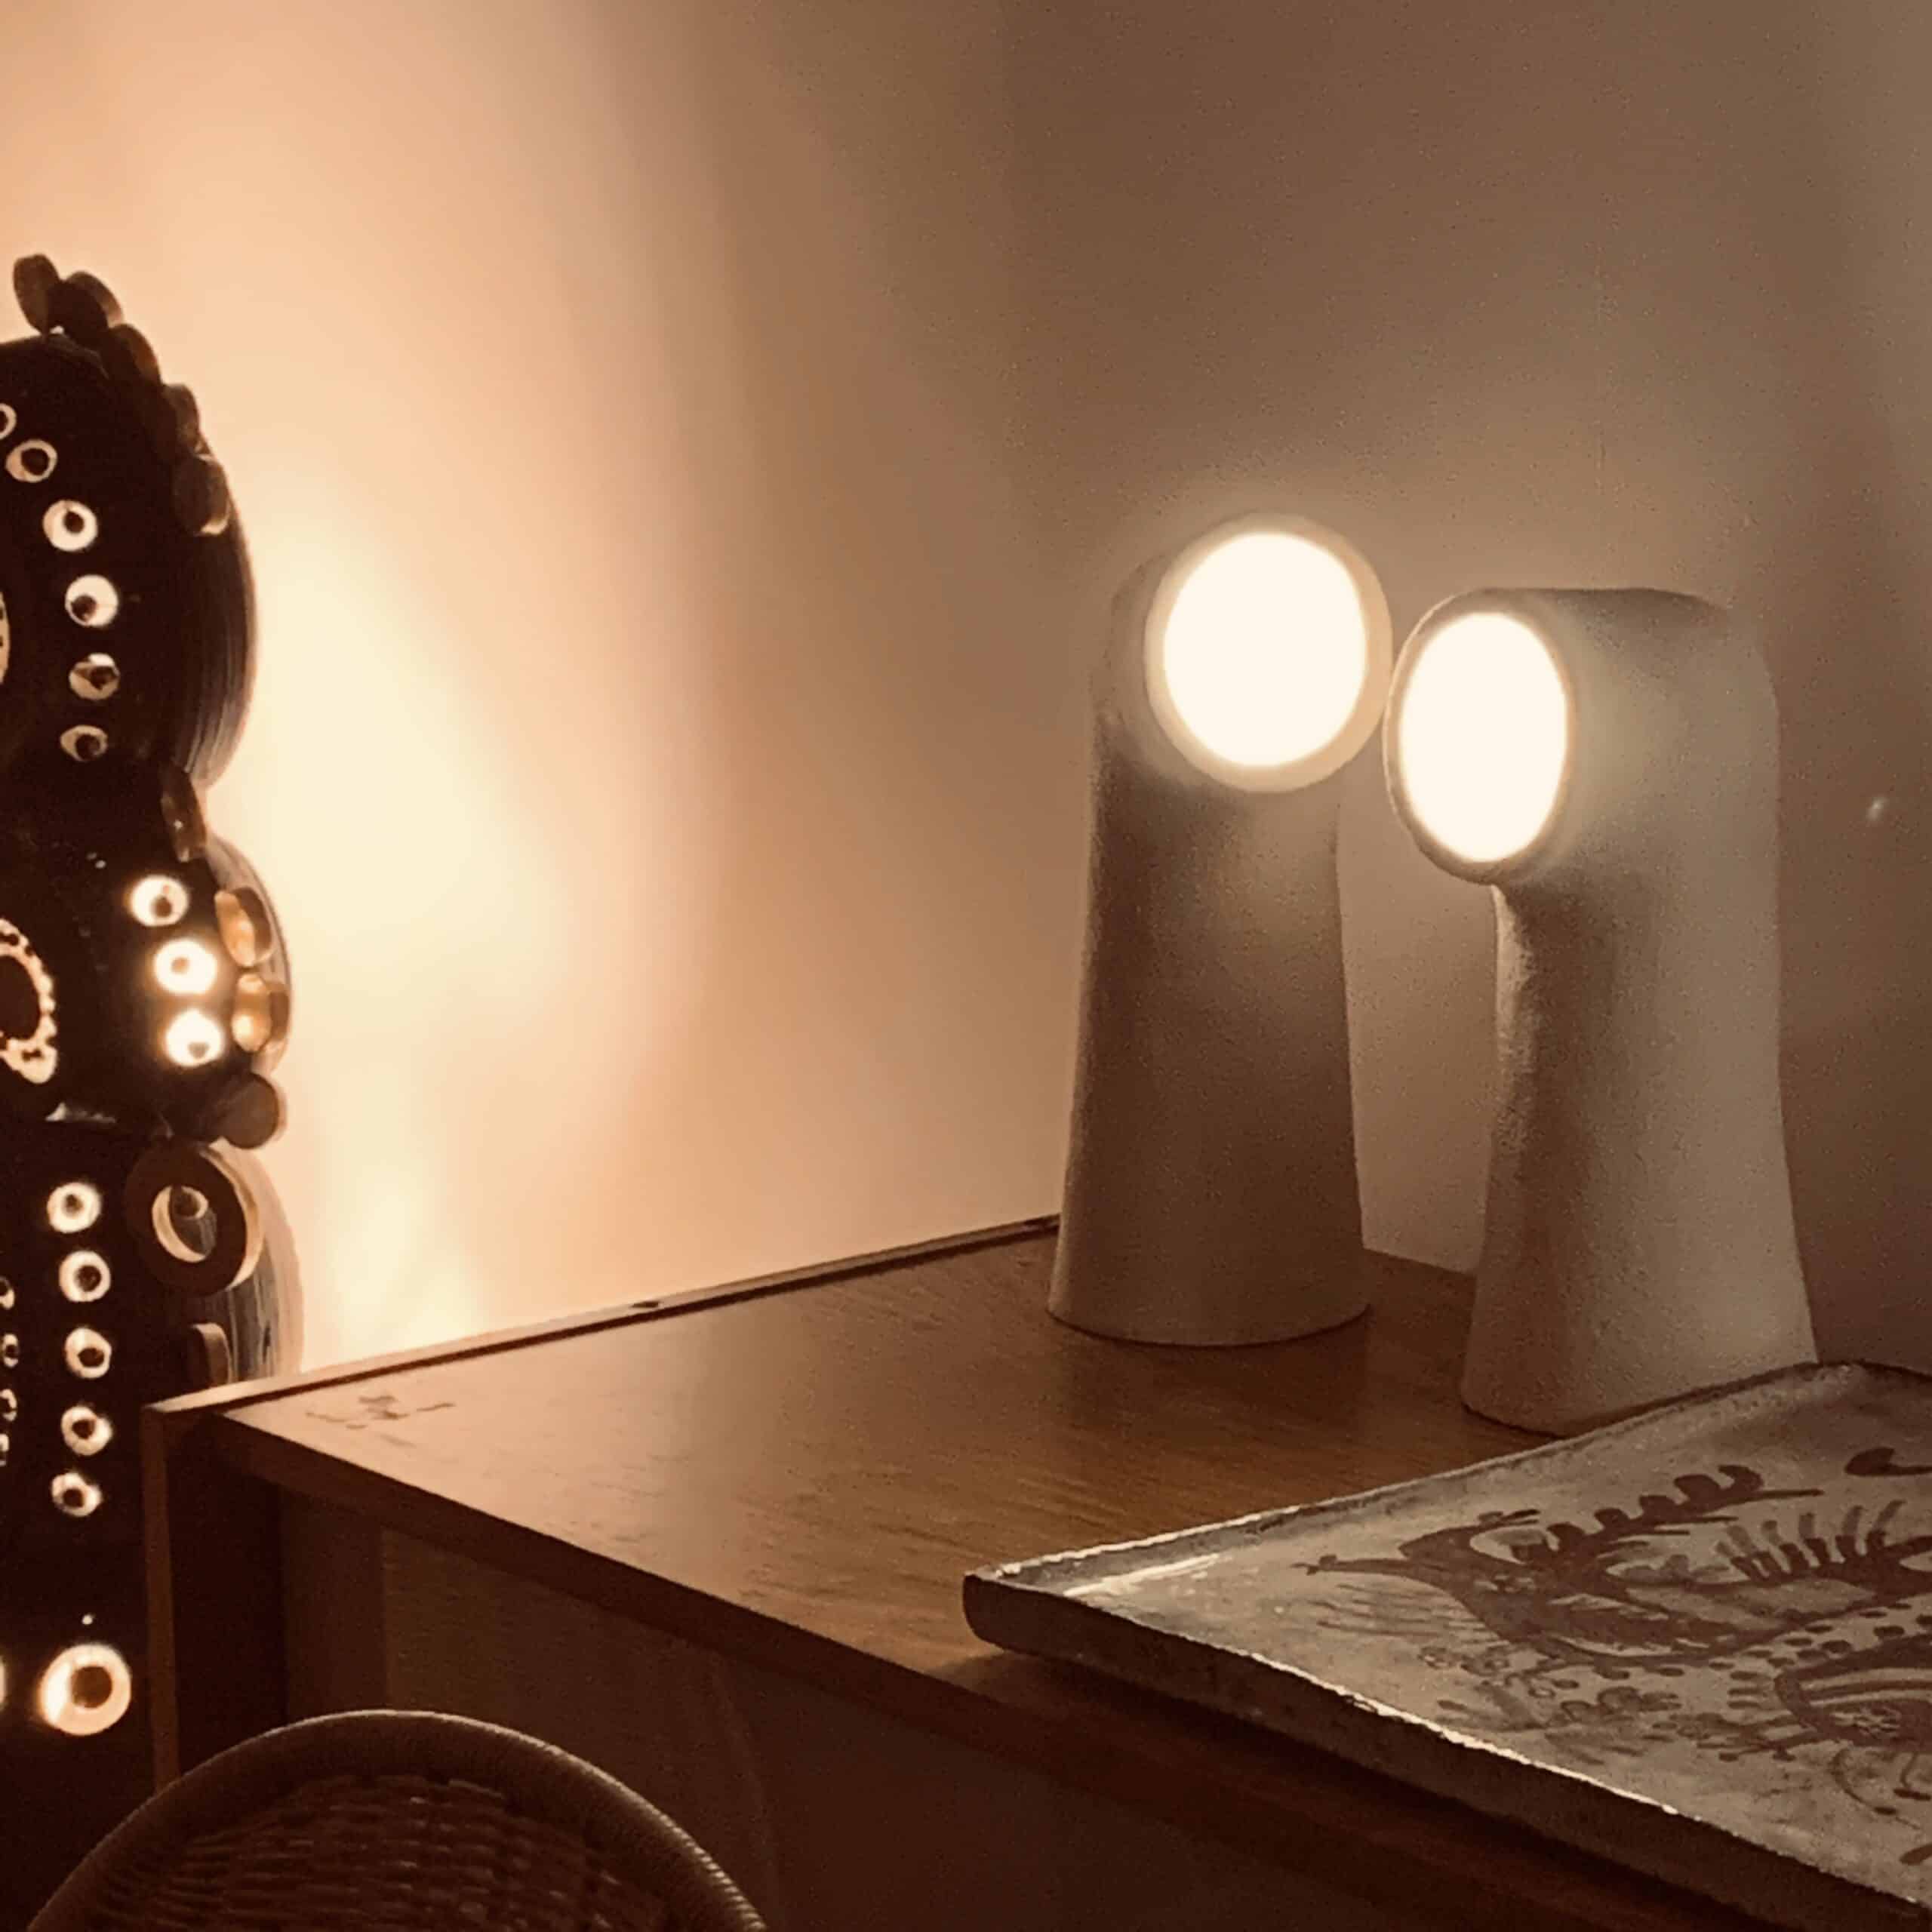 Lampes sculptures en céramique MR 0 Natalie Rich